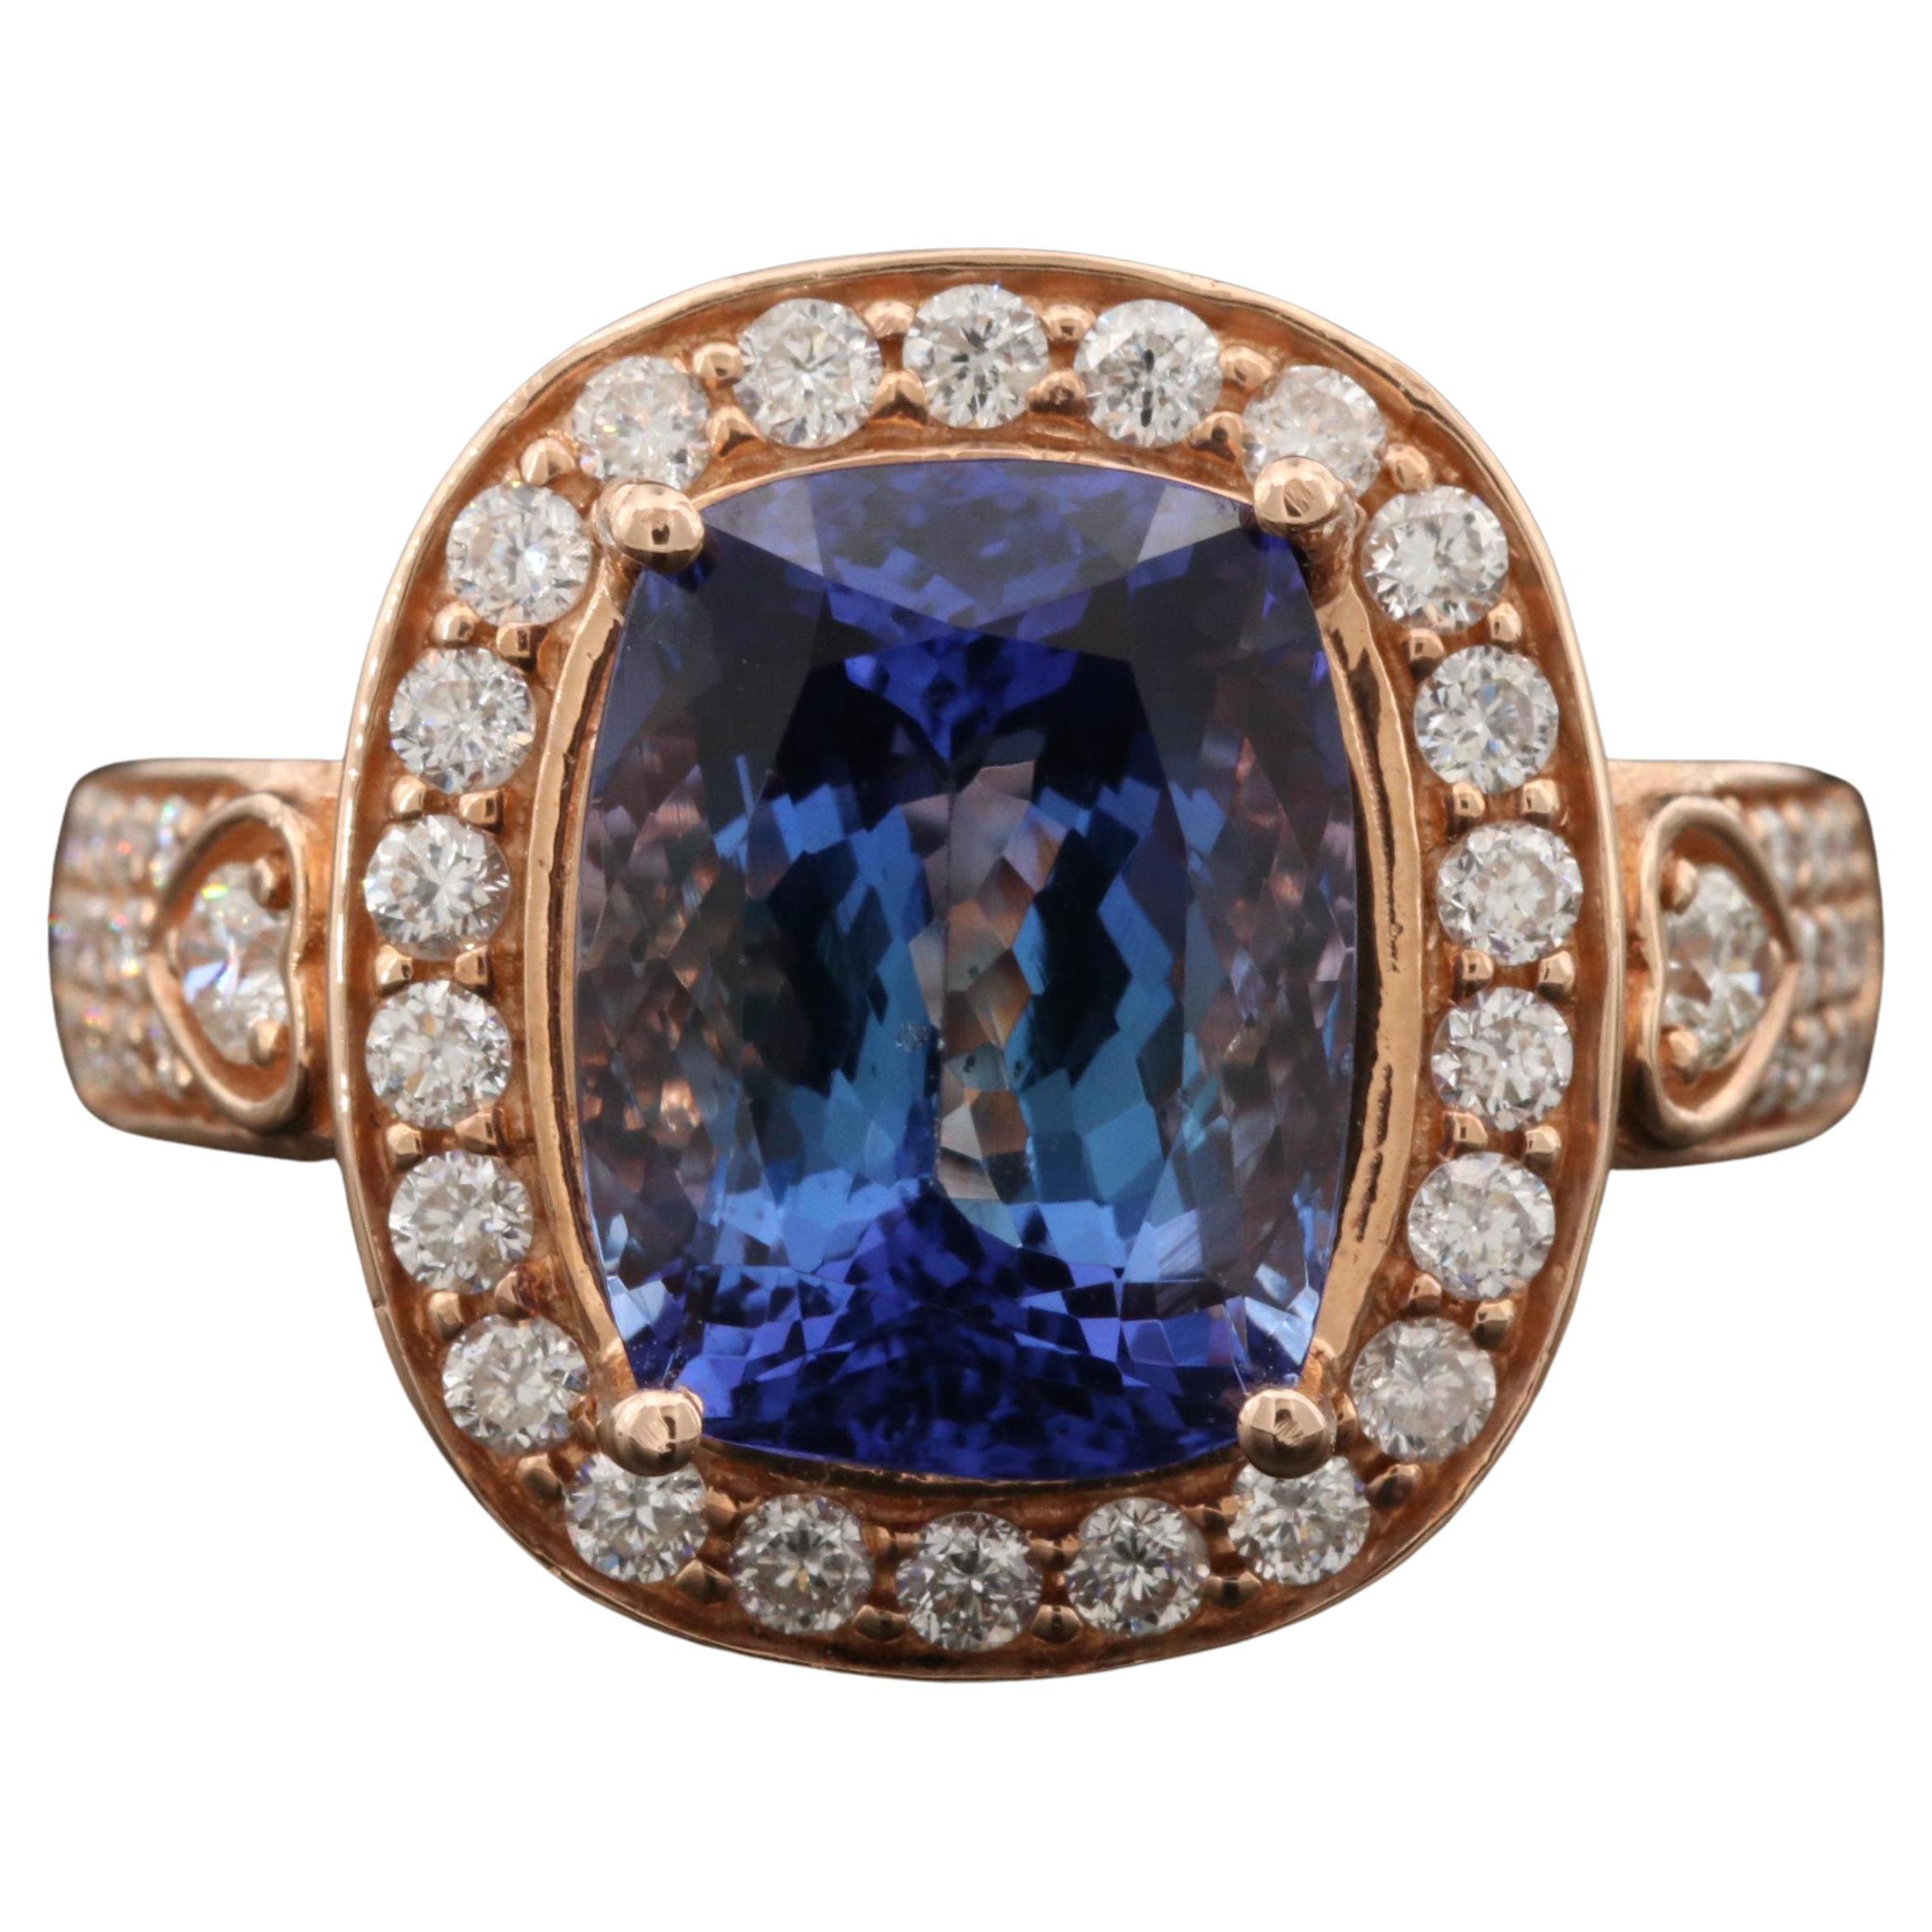 For Sale:  6 Carat Violet Tanzanite Engagement Ring, Halo Diamond Rose Gold Wedding Ring